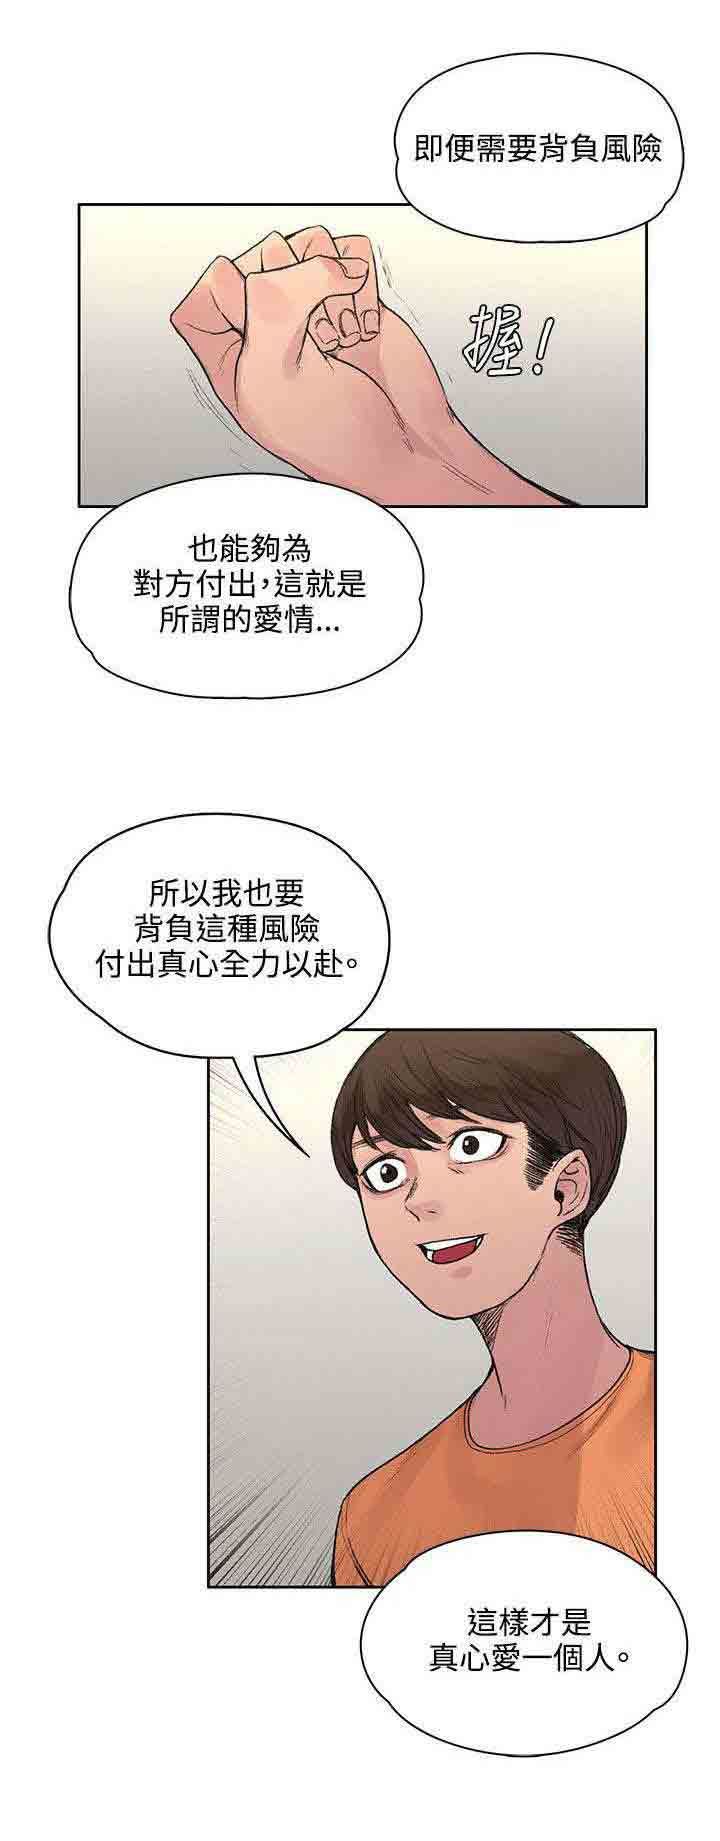 韩国污漫画 甜蜜的香氣 第39话所谓的爱情 10